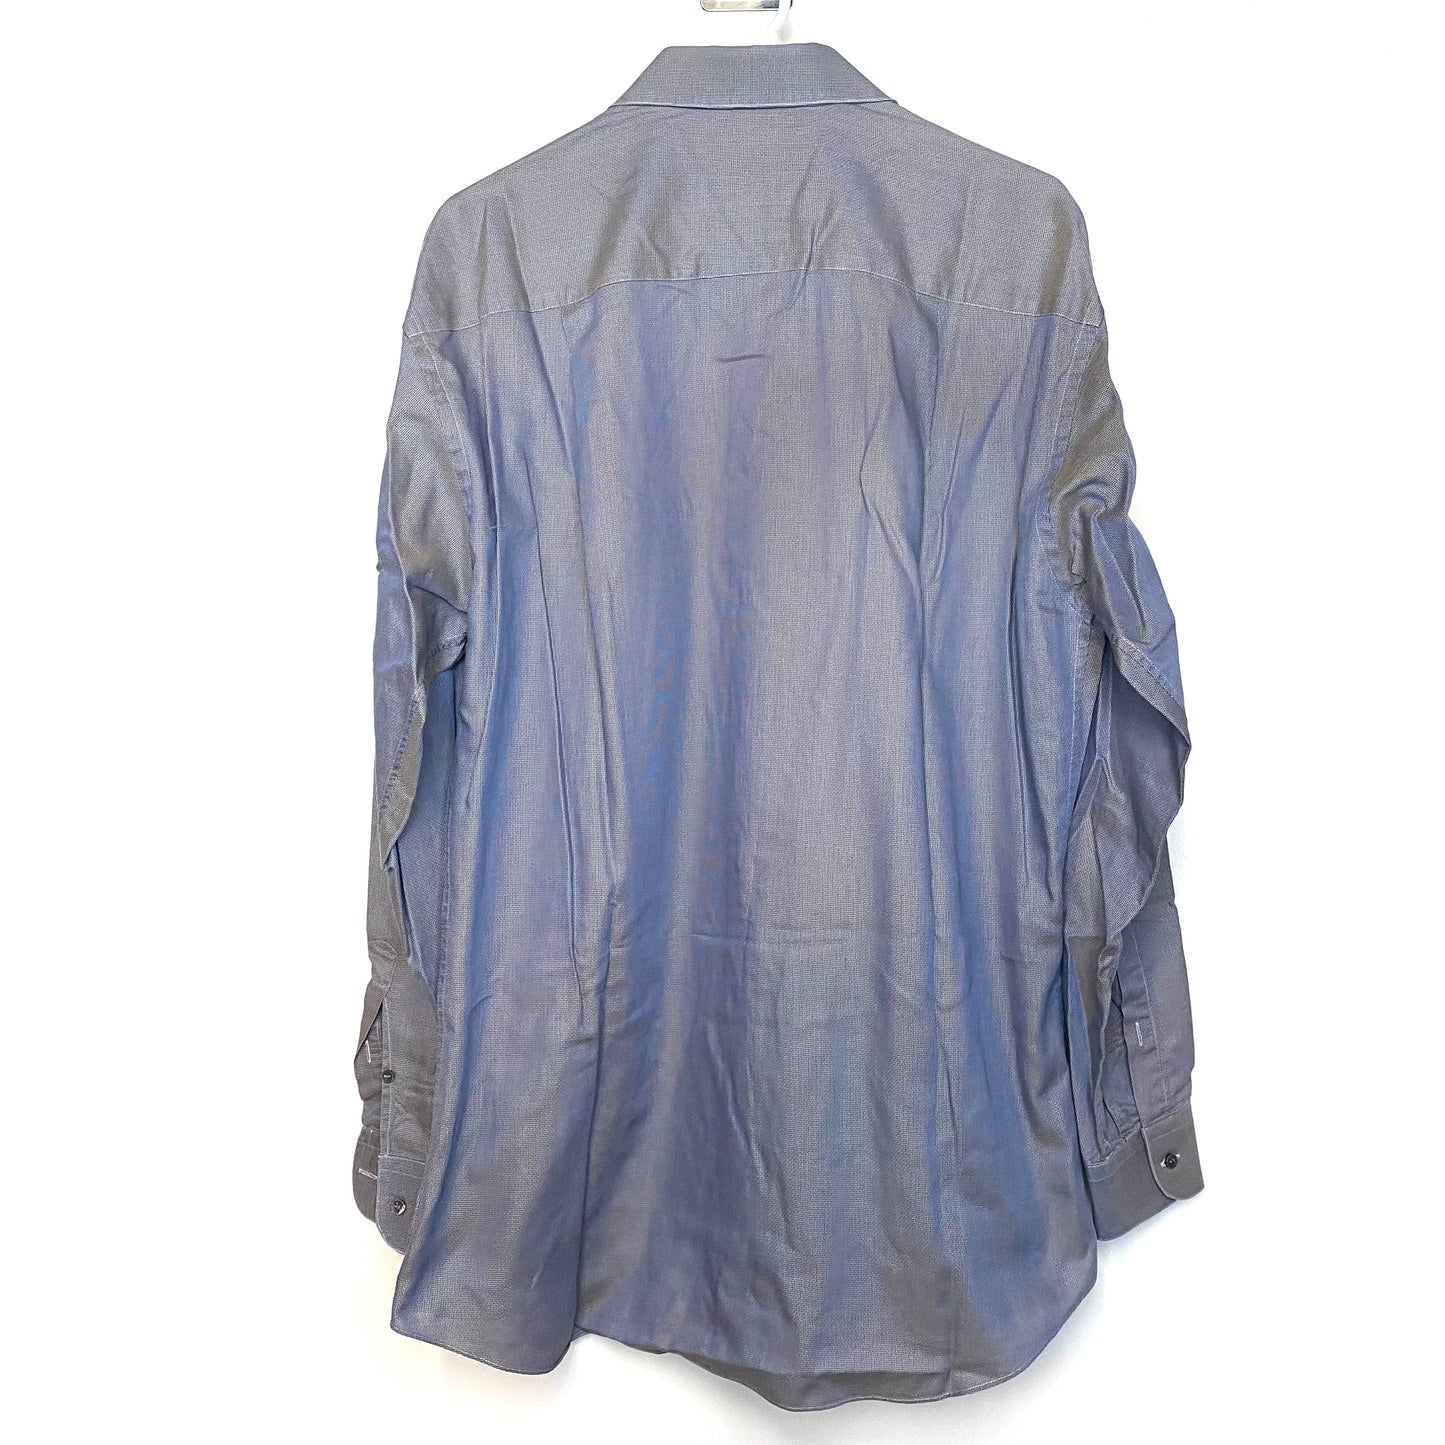 Ermenegildo Zegna Mens Dress Shirt Size 39 15½ Gray White Button-Up Dress Shirt L/s